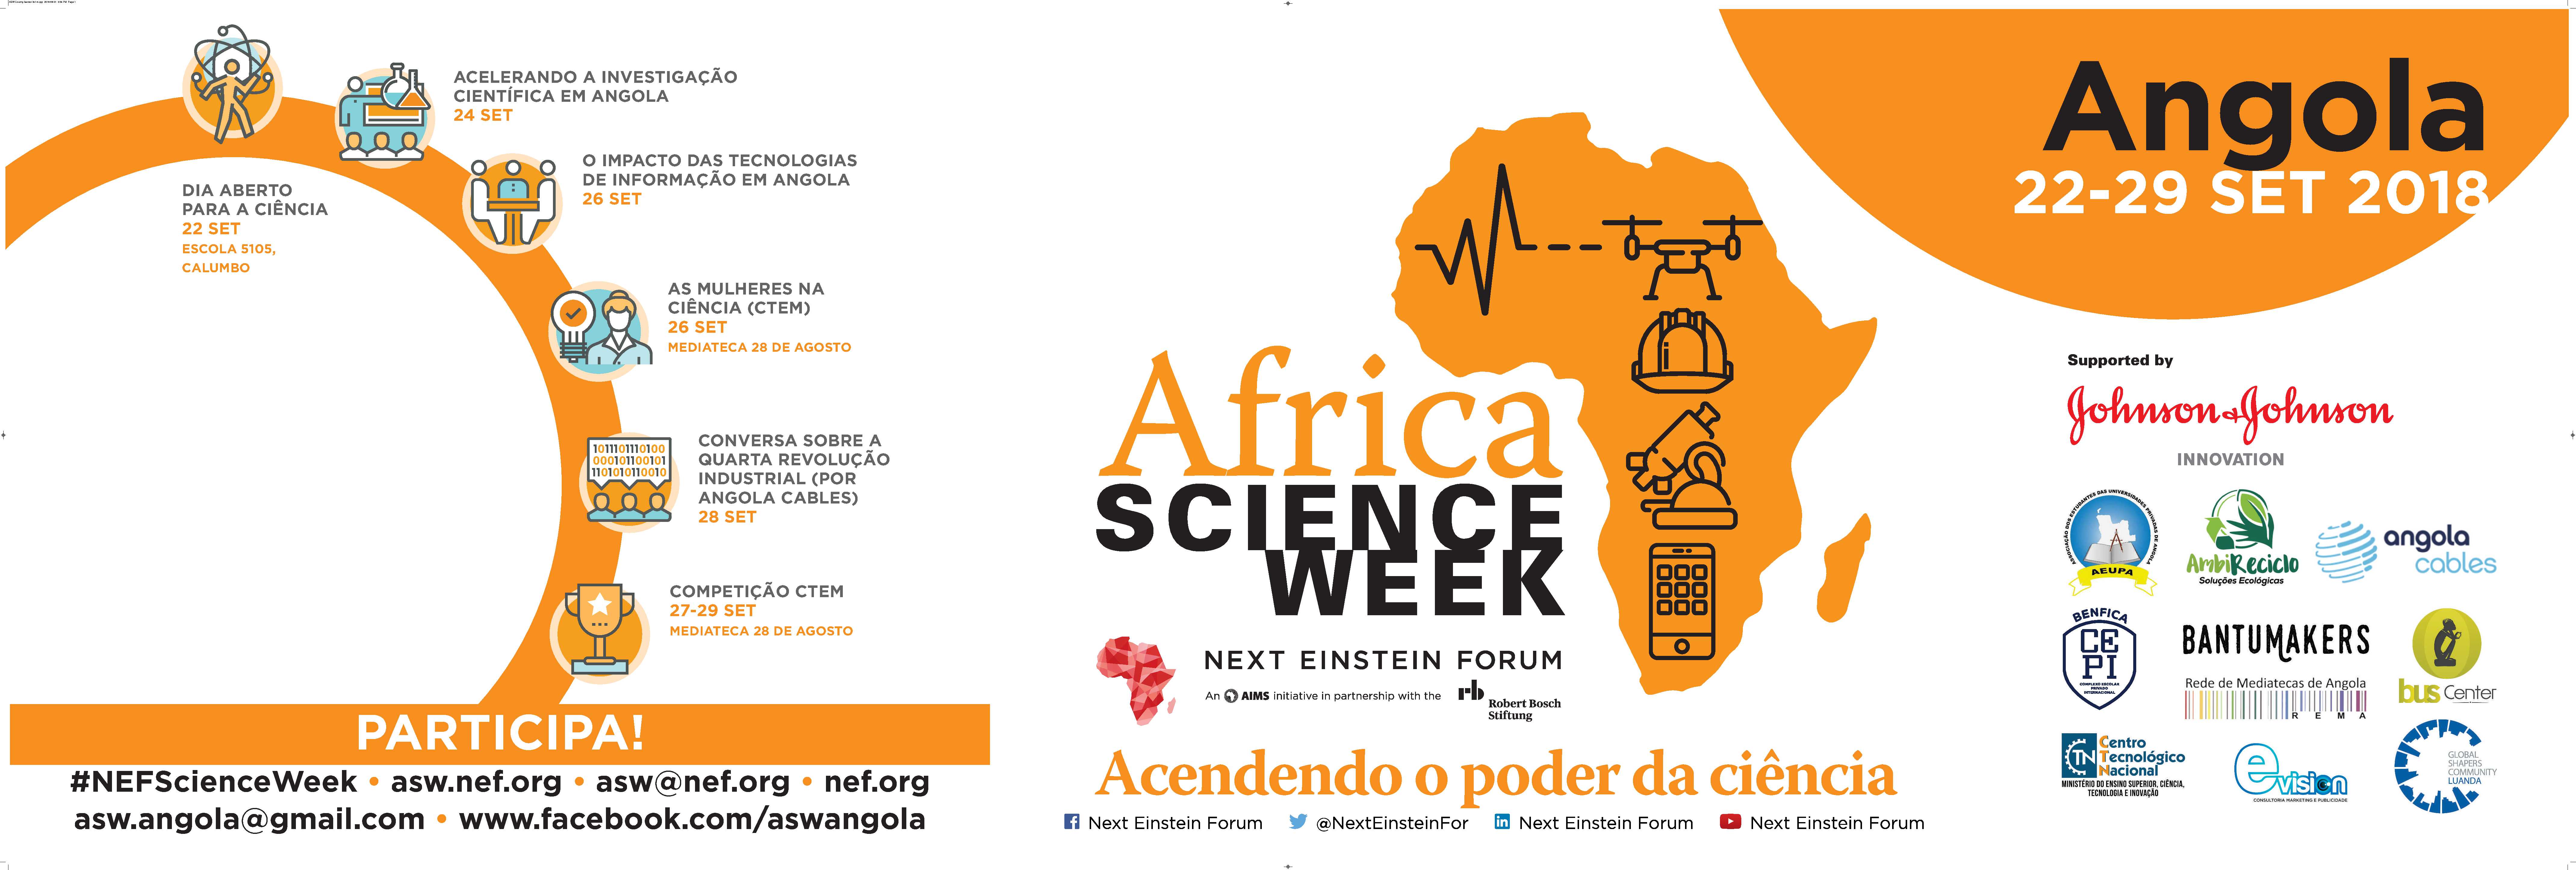 Africa Science Week